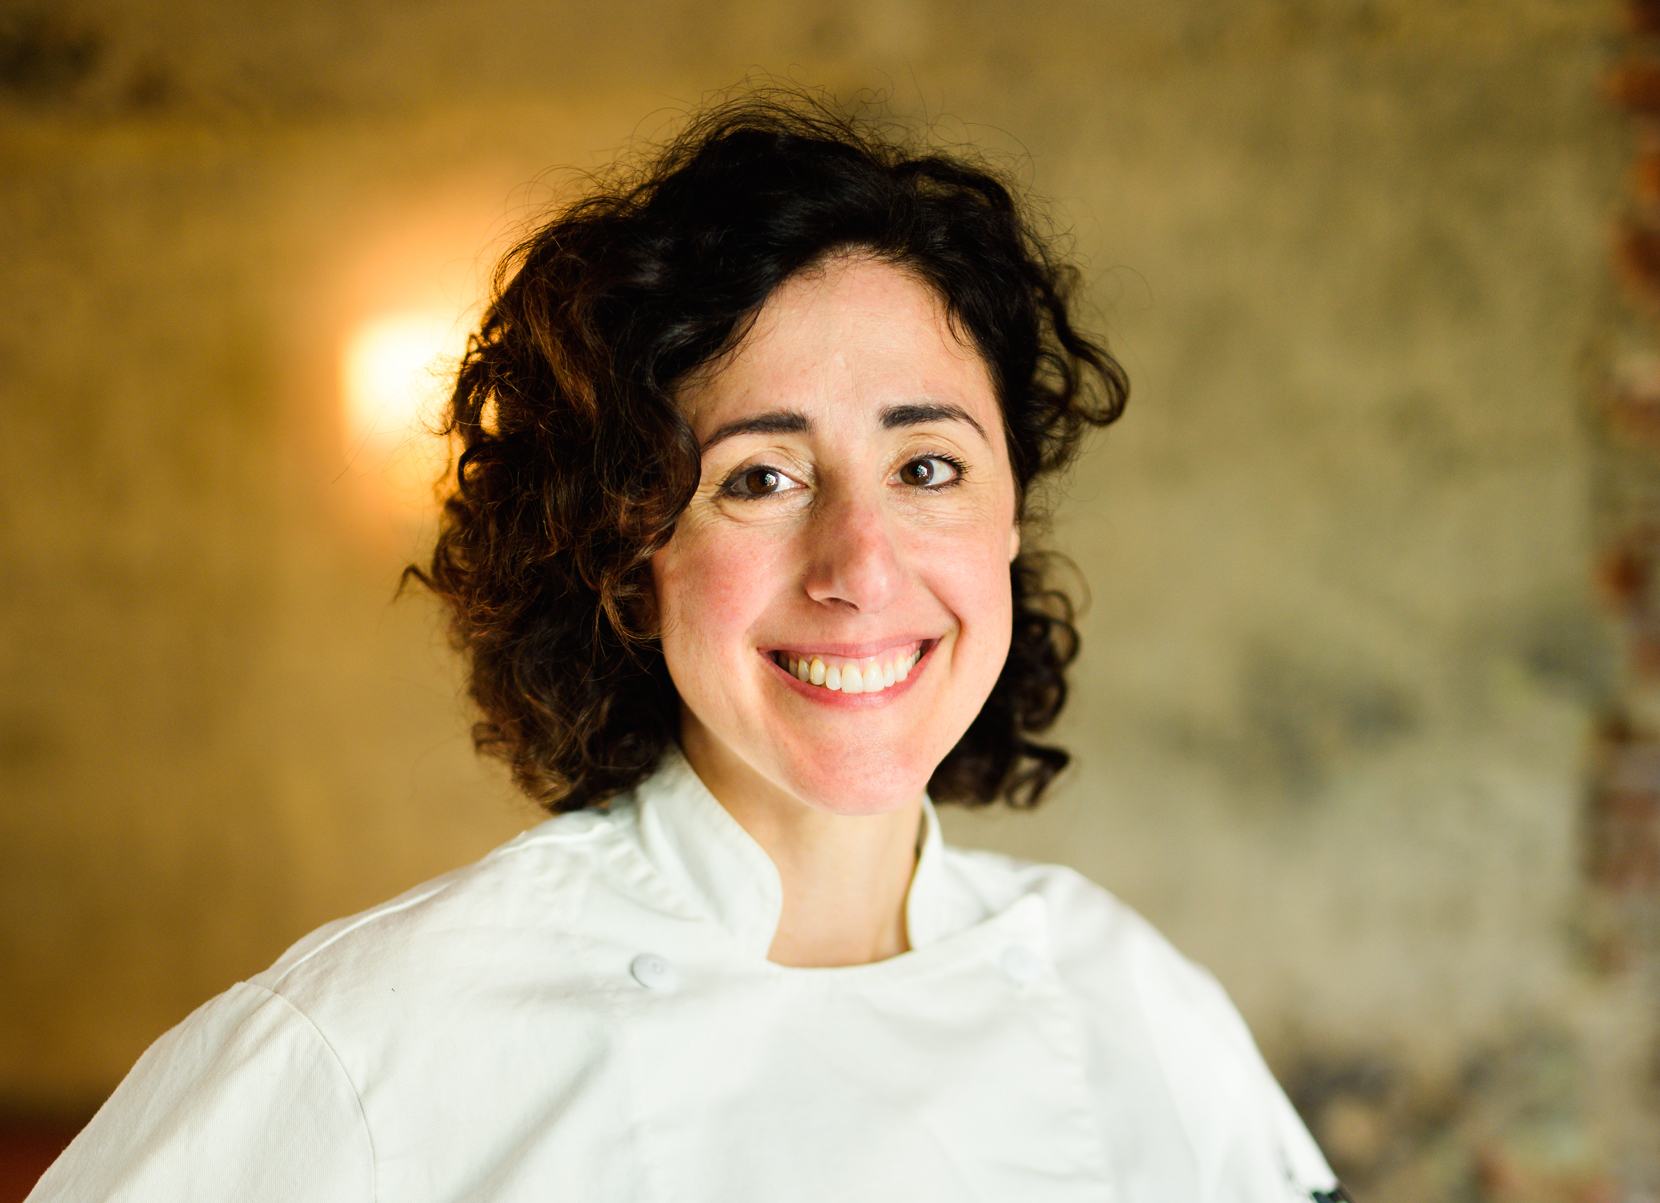 Veritable Quandary and Q Restaurant chef Annie Cuggino